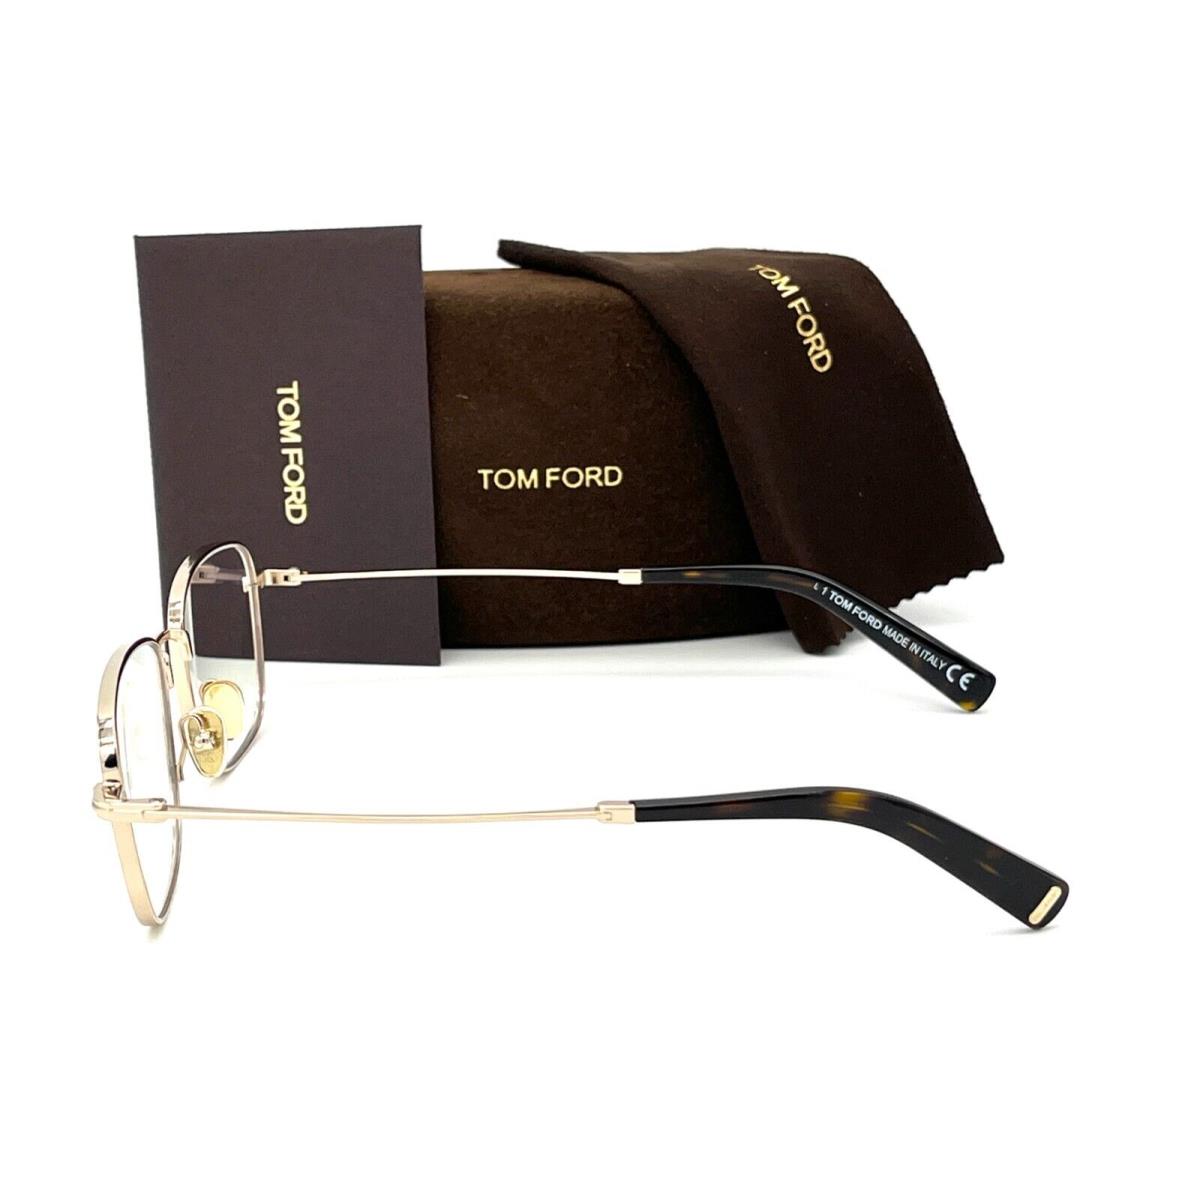 Tom Ford eyeglasses  - Shiny Gold Frame, Blue Block Lens 2